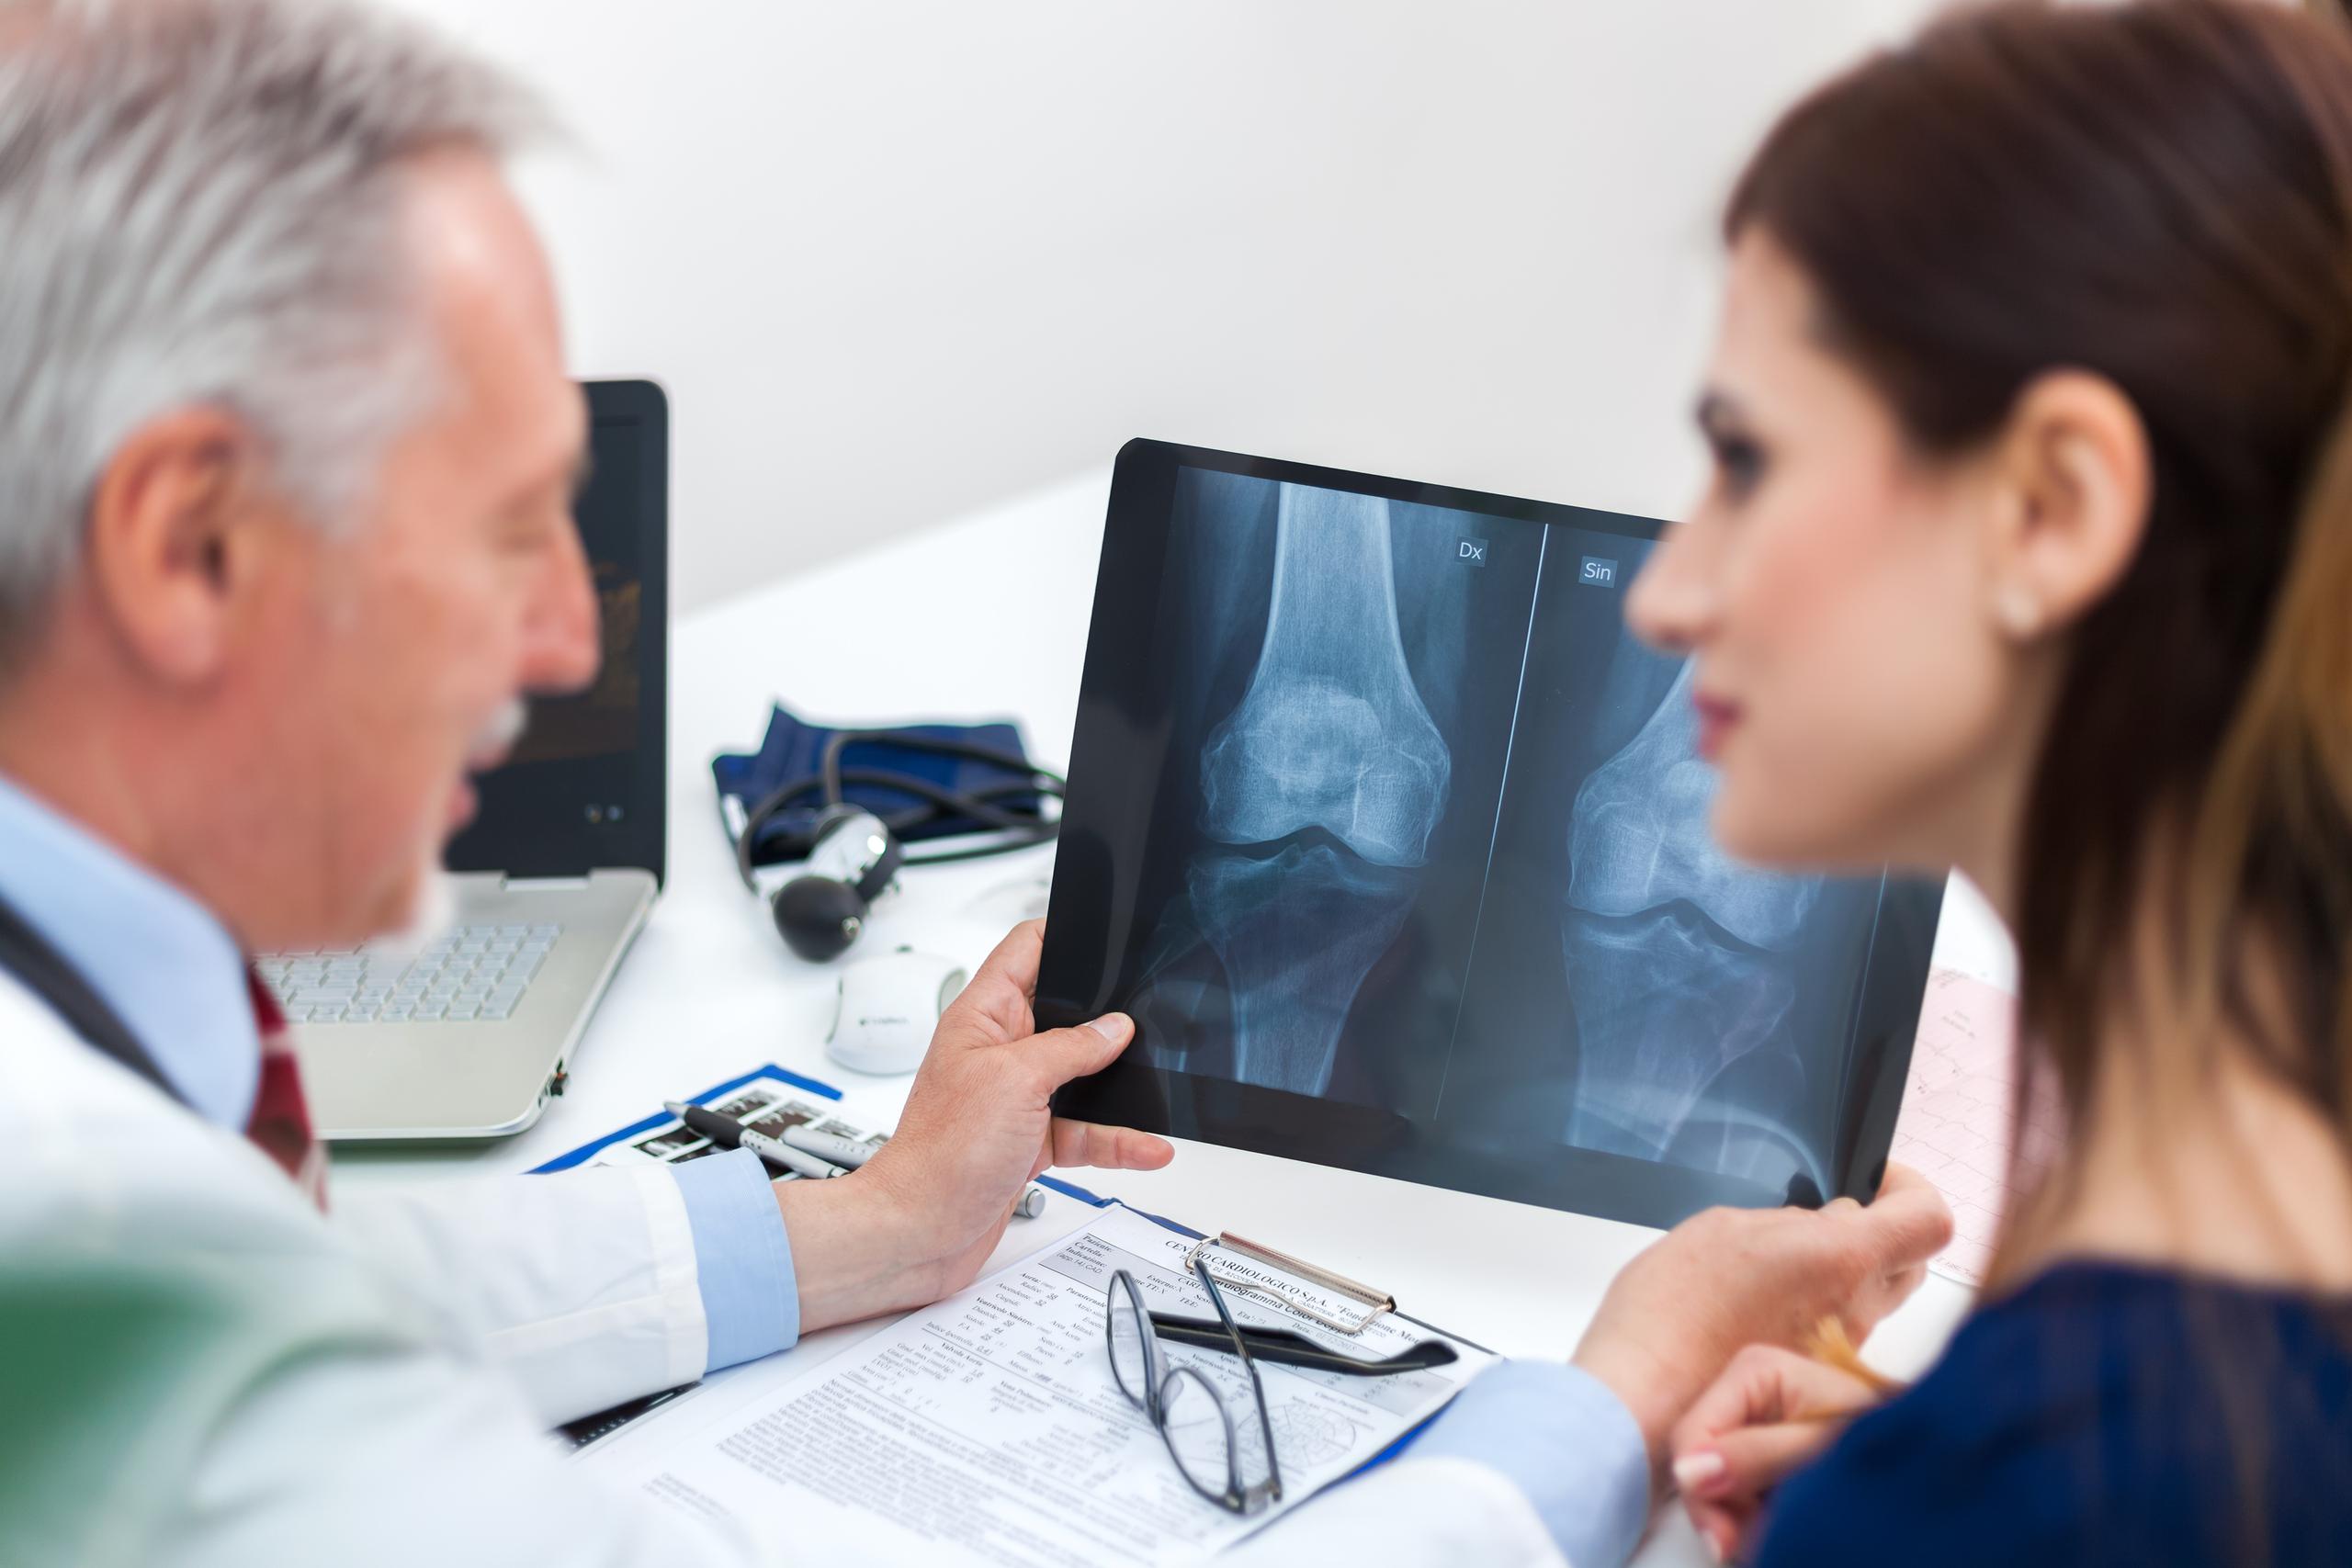 Las radiografías simples de los huesos afectados muestran osteoporosis cuando ésta ya está bastante avanzada, por ello la importancia de realizarse un examen de densidad ósea.